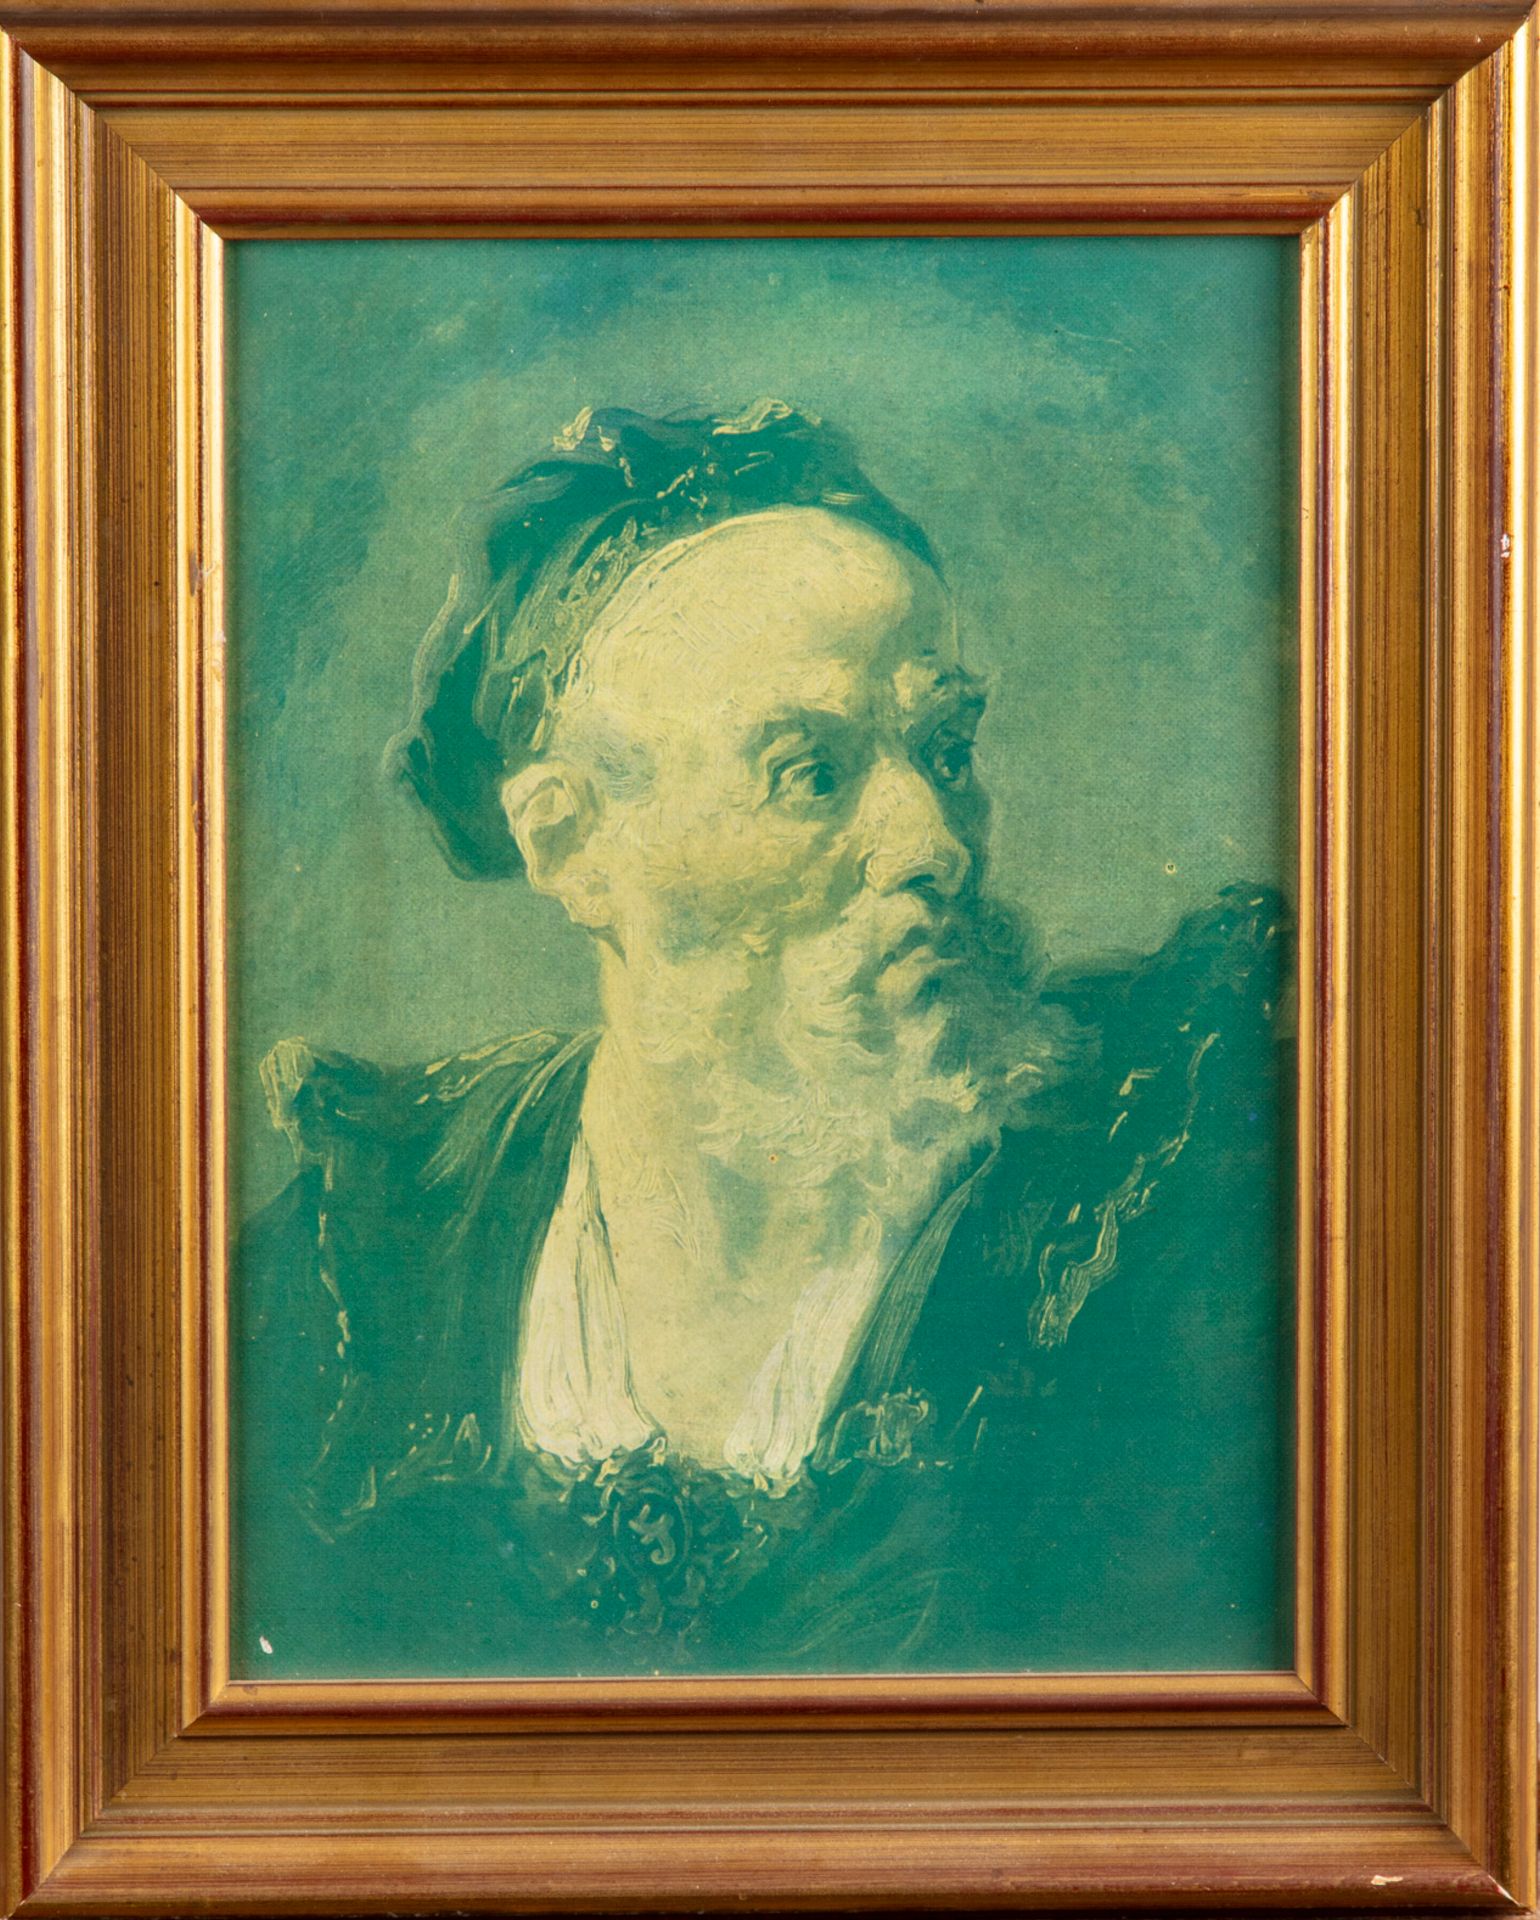 Null Porträt eines Mannes

Chromolithographie

27 x 20 cm